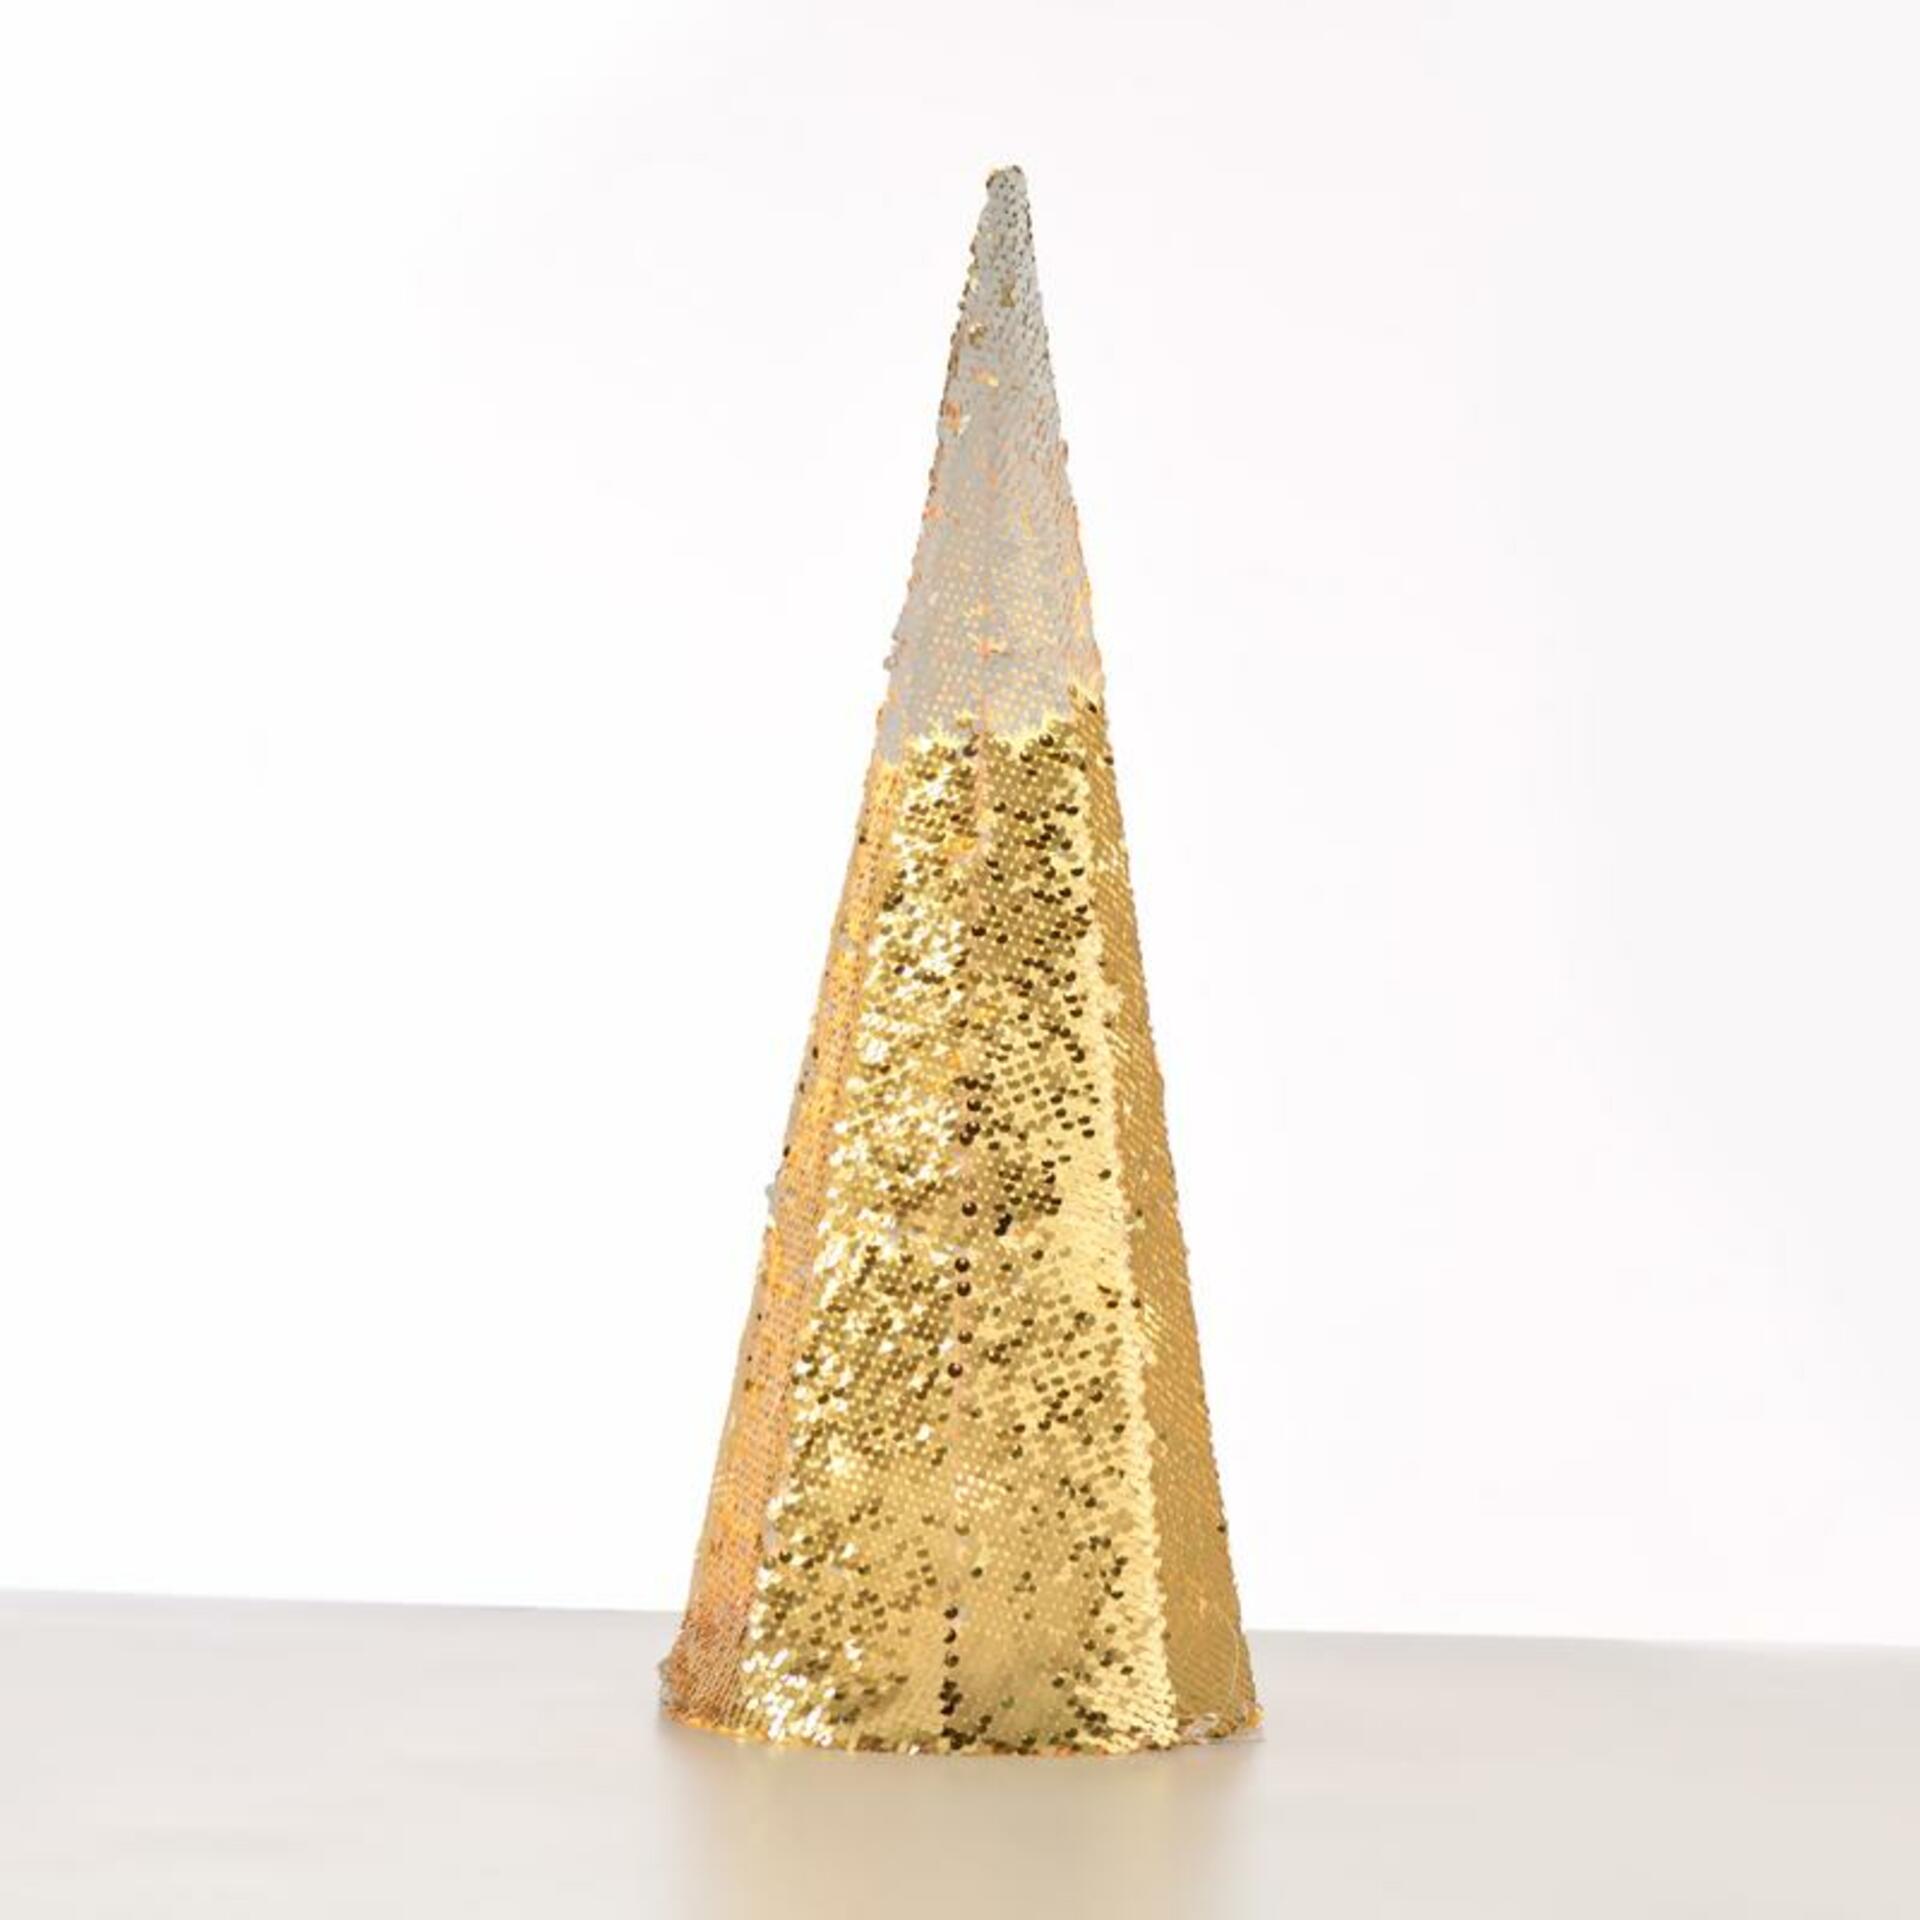 ACA Lighting  šampaň zlatá + bílá dekorační kuželový strom 35 WW LED na baterie 3xAA, IP20 pr.27.5x90cm X1135118